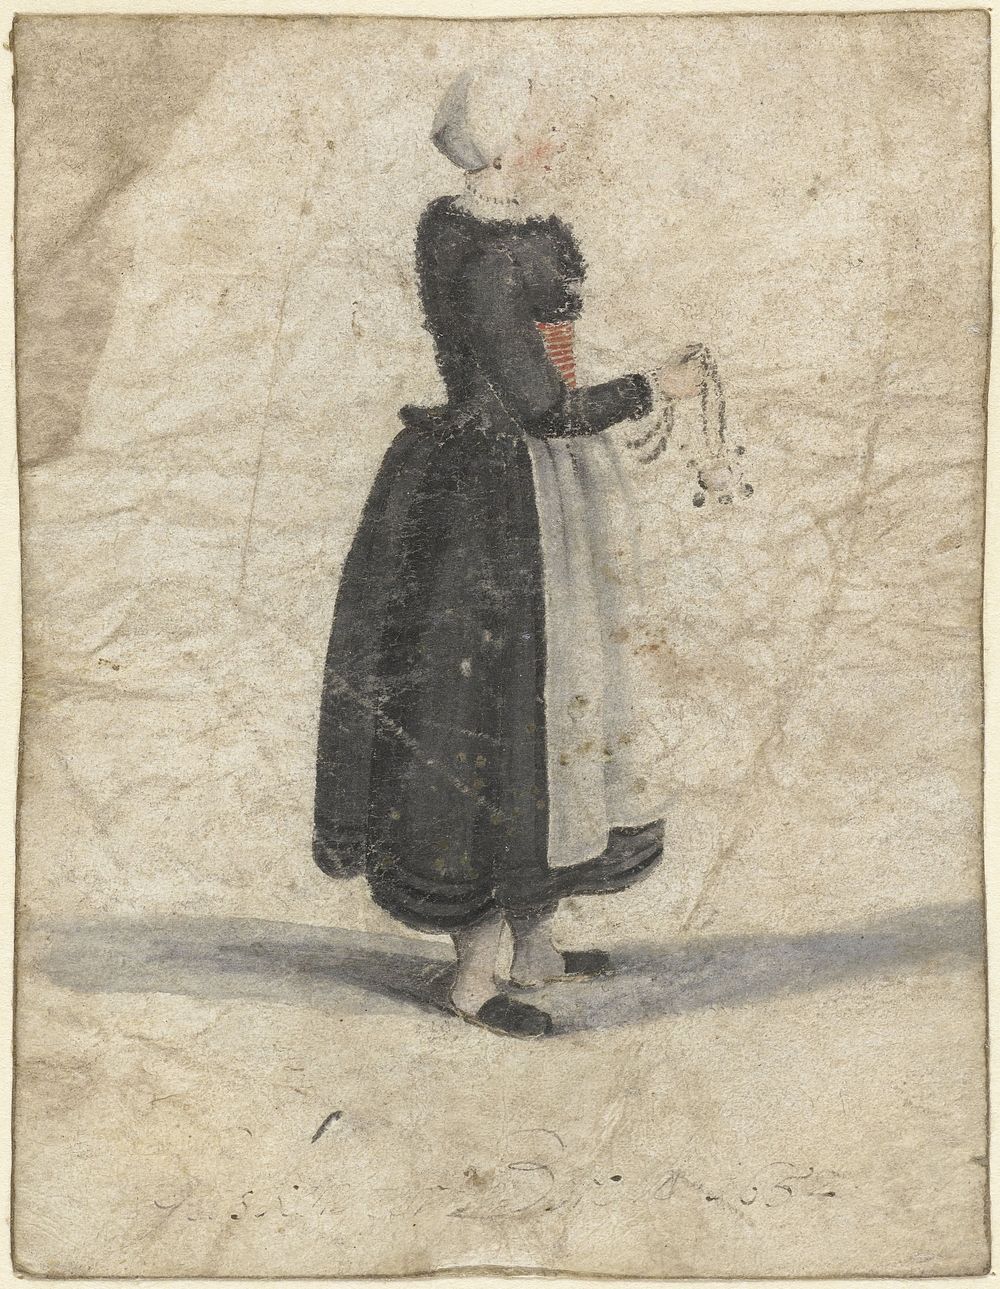 Noord-Hollandse vrouw staand met een ornament of tas in de hand (1652) by Gesina ter Borch